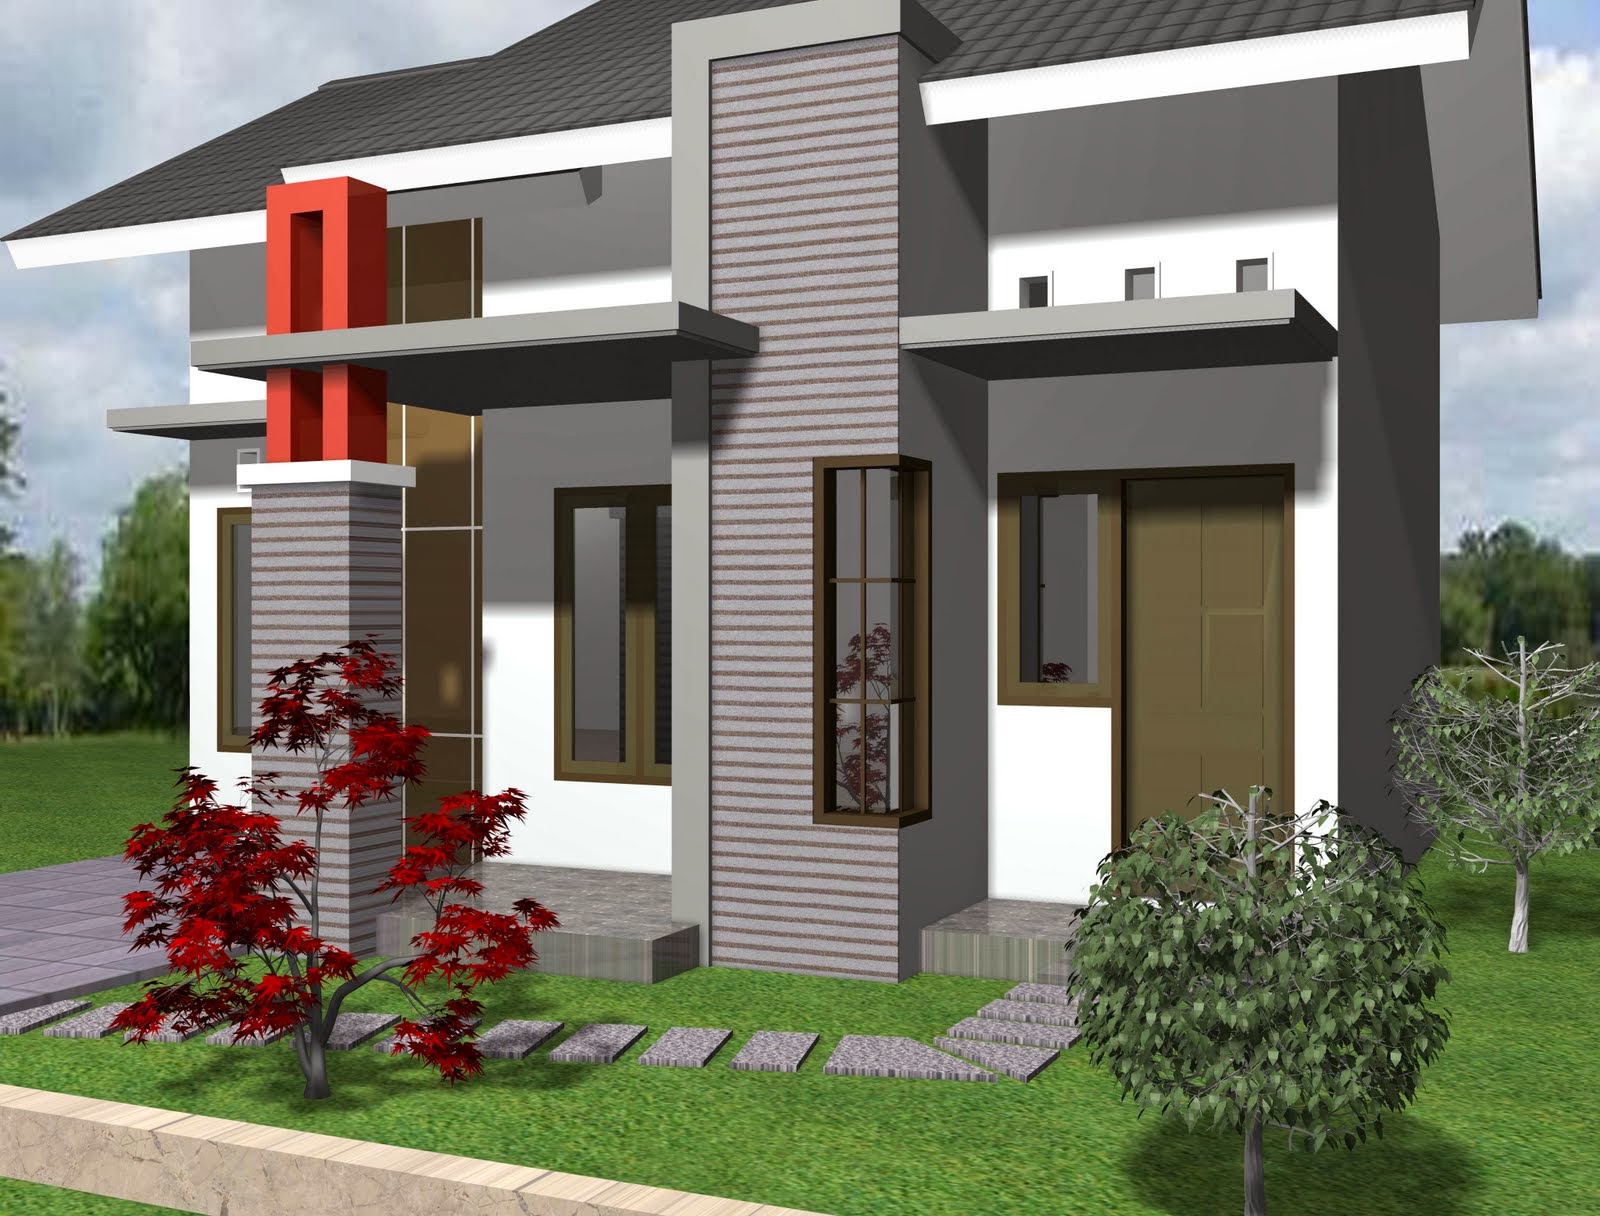 Gambar Desain Rumah Minimalis Sederhana 1 Lantai Berbagi Sejuta Info